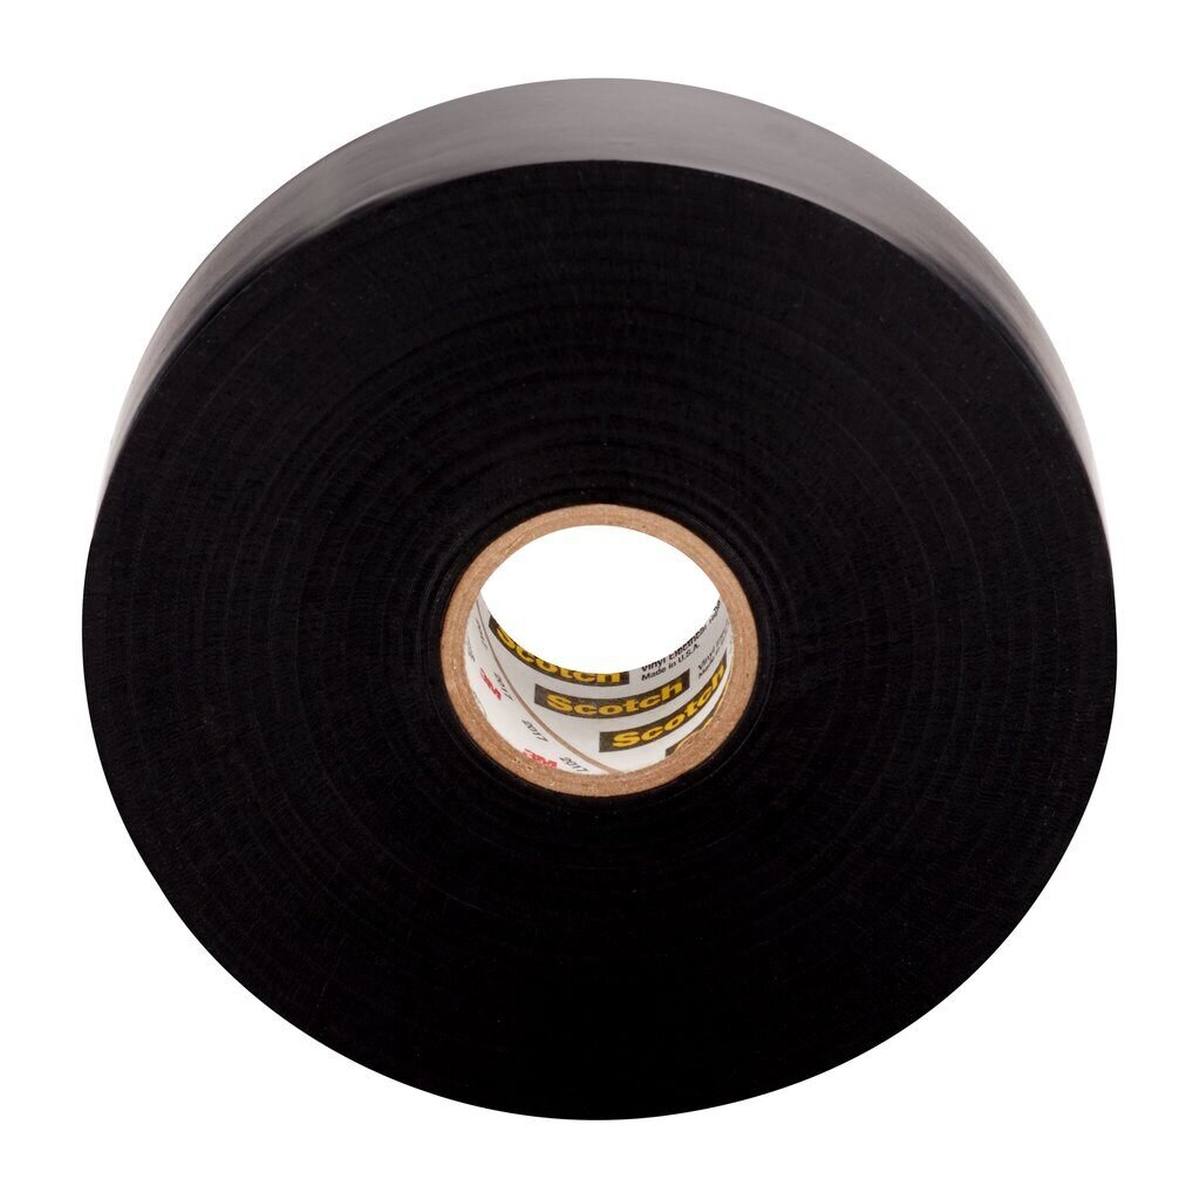 3M Scotch Super 88 vinyl electrical insulating tape, black, 25 mm x 33 m, 0.22 mm